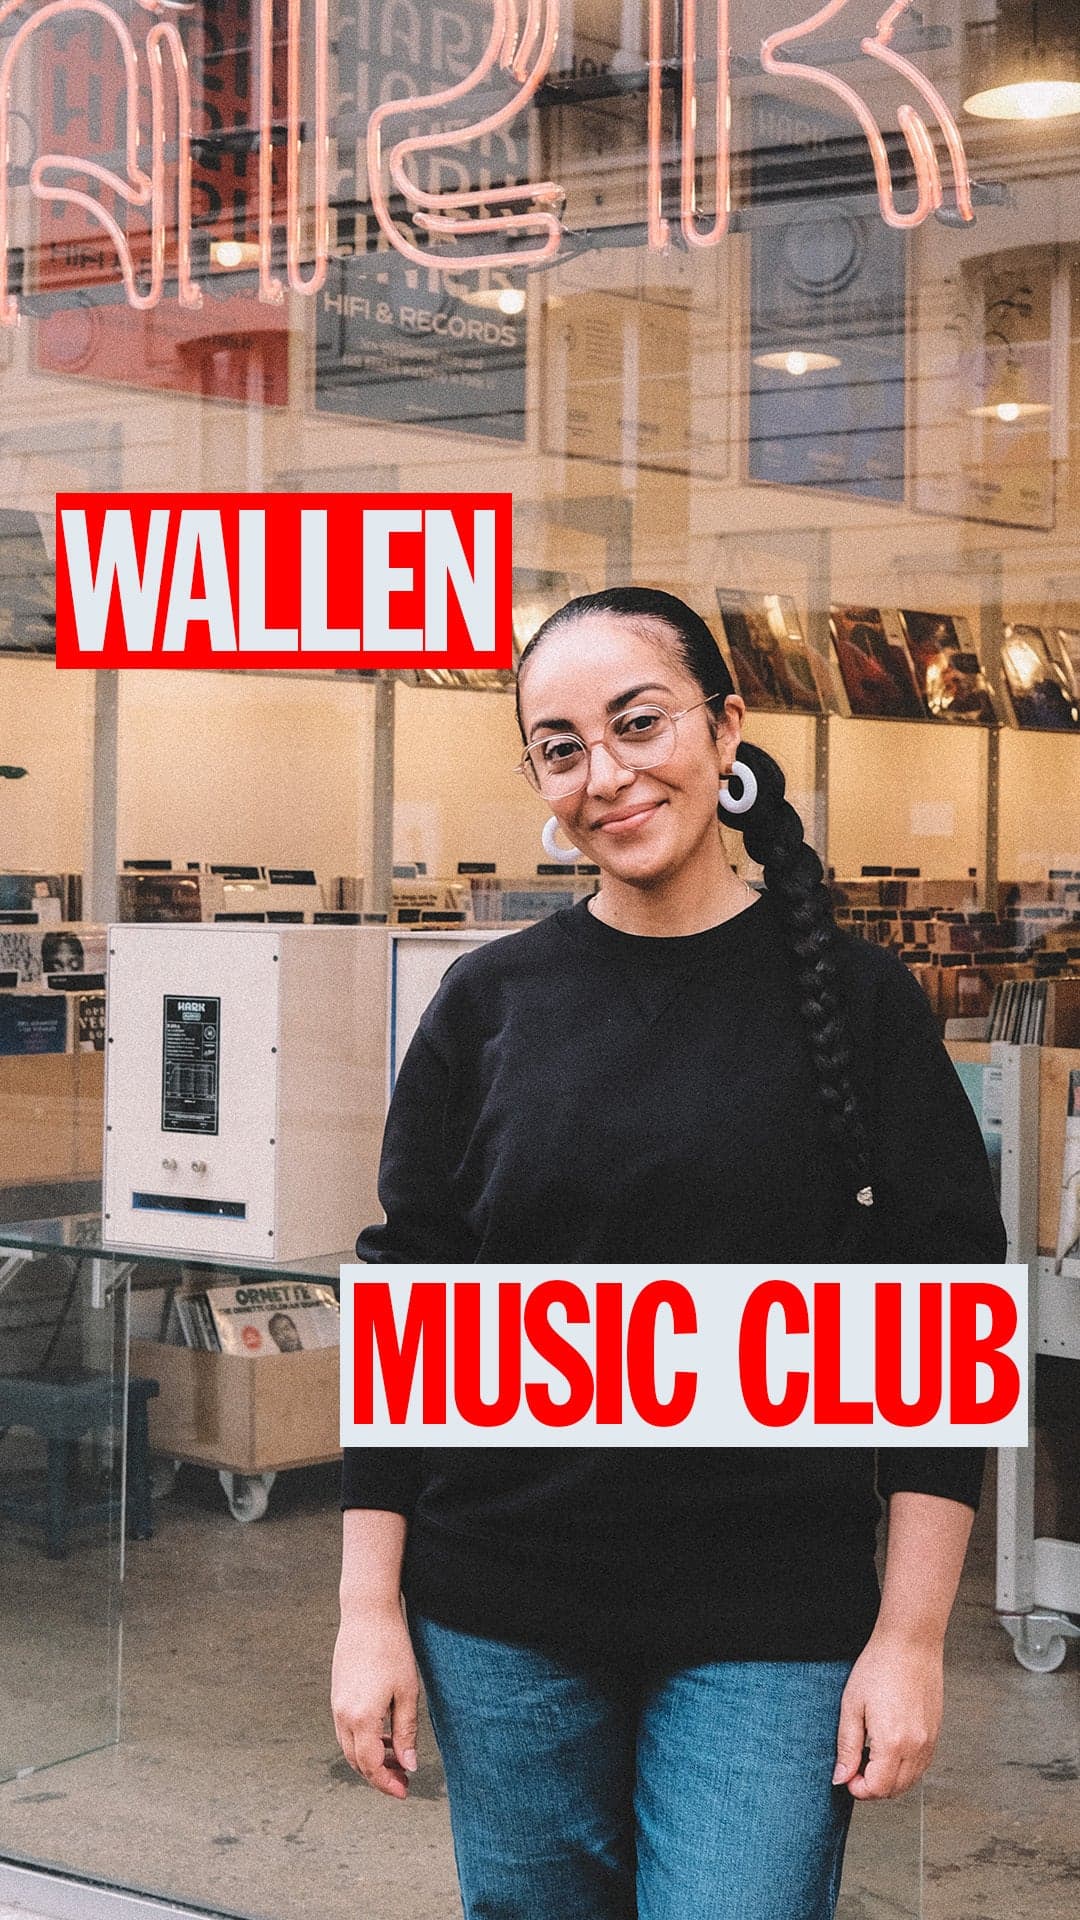 “Un artiste est un ambassadeur de liberté” : Wallen est dans le Music Club